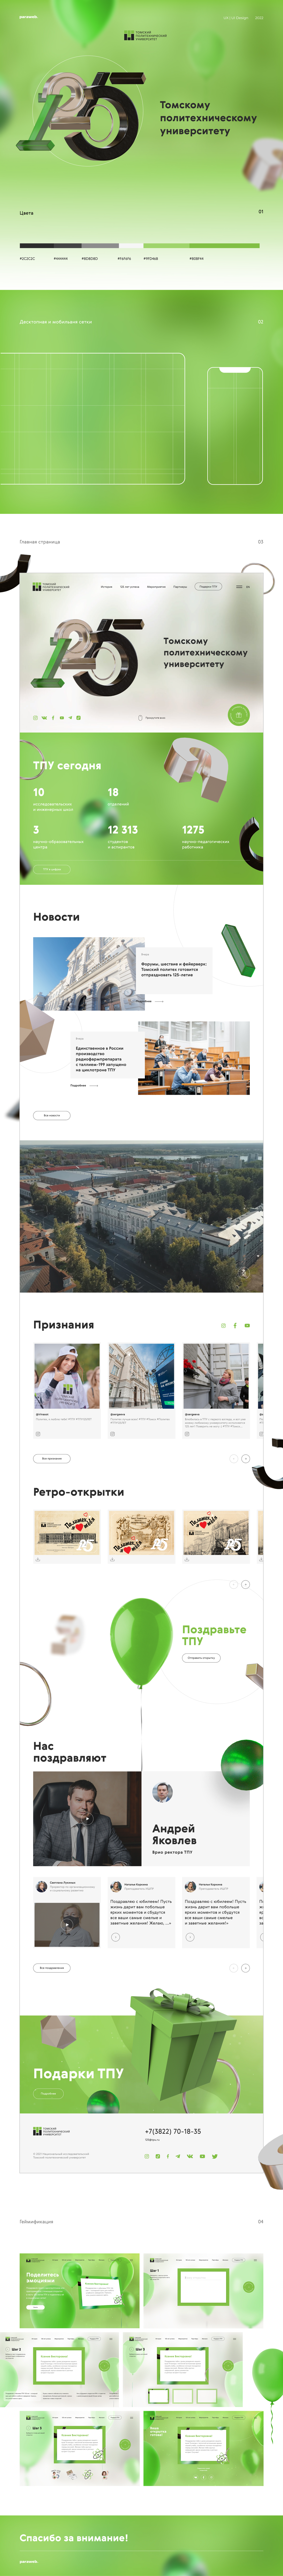 Юбилейный сайт Томского политехнического университета